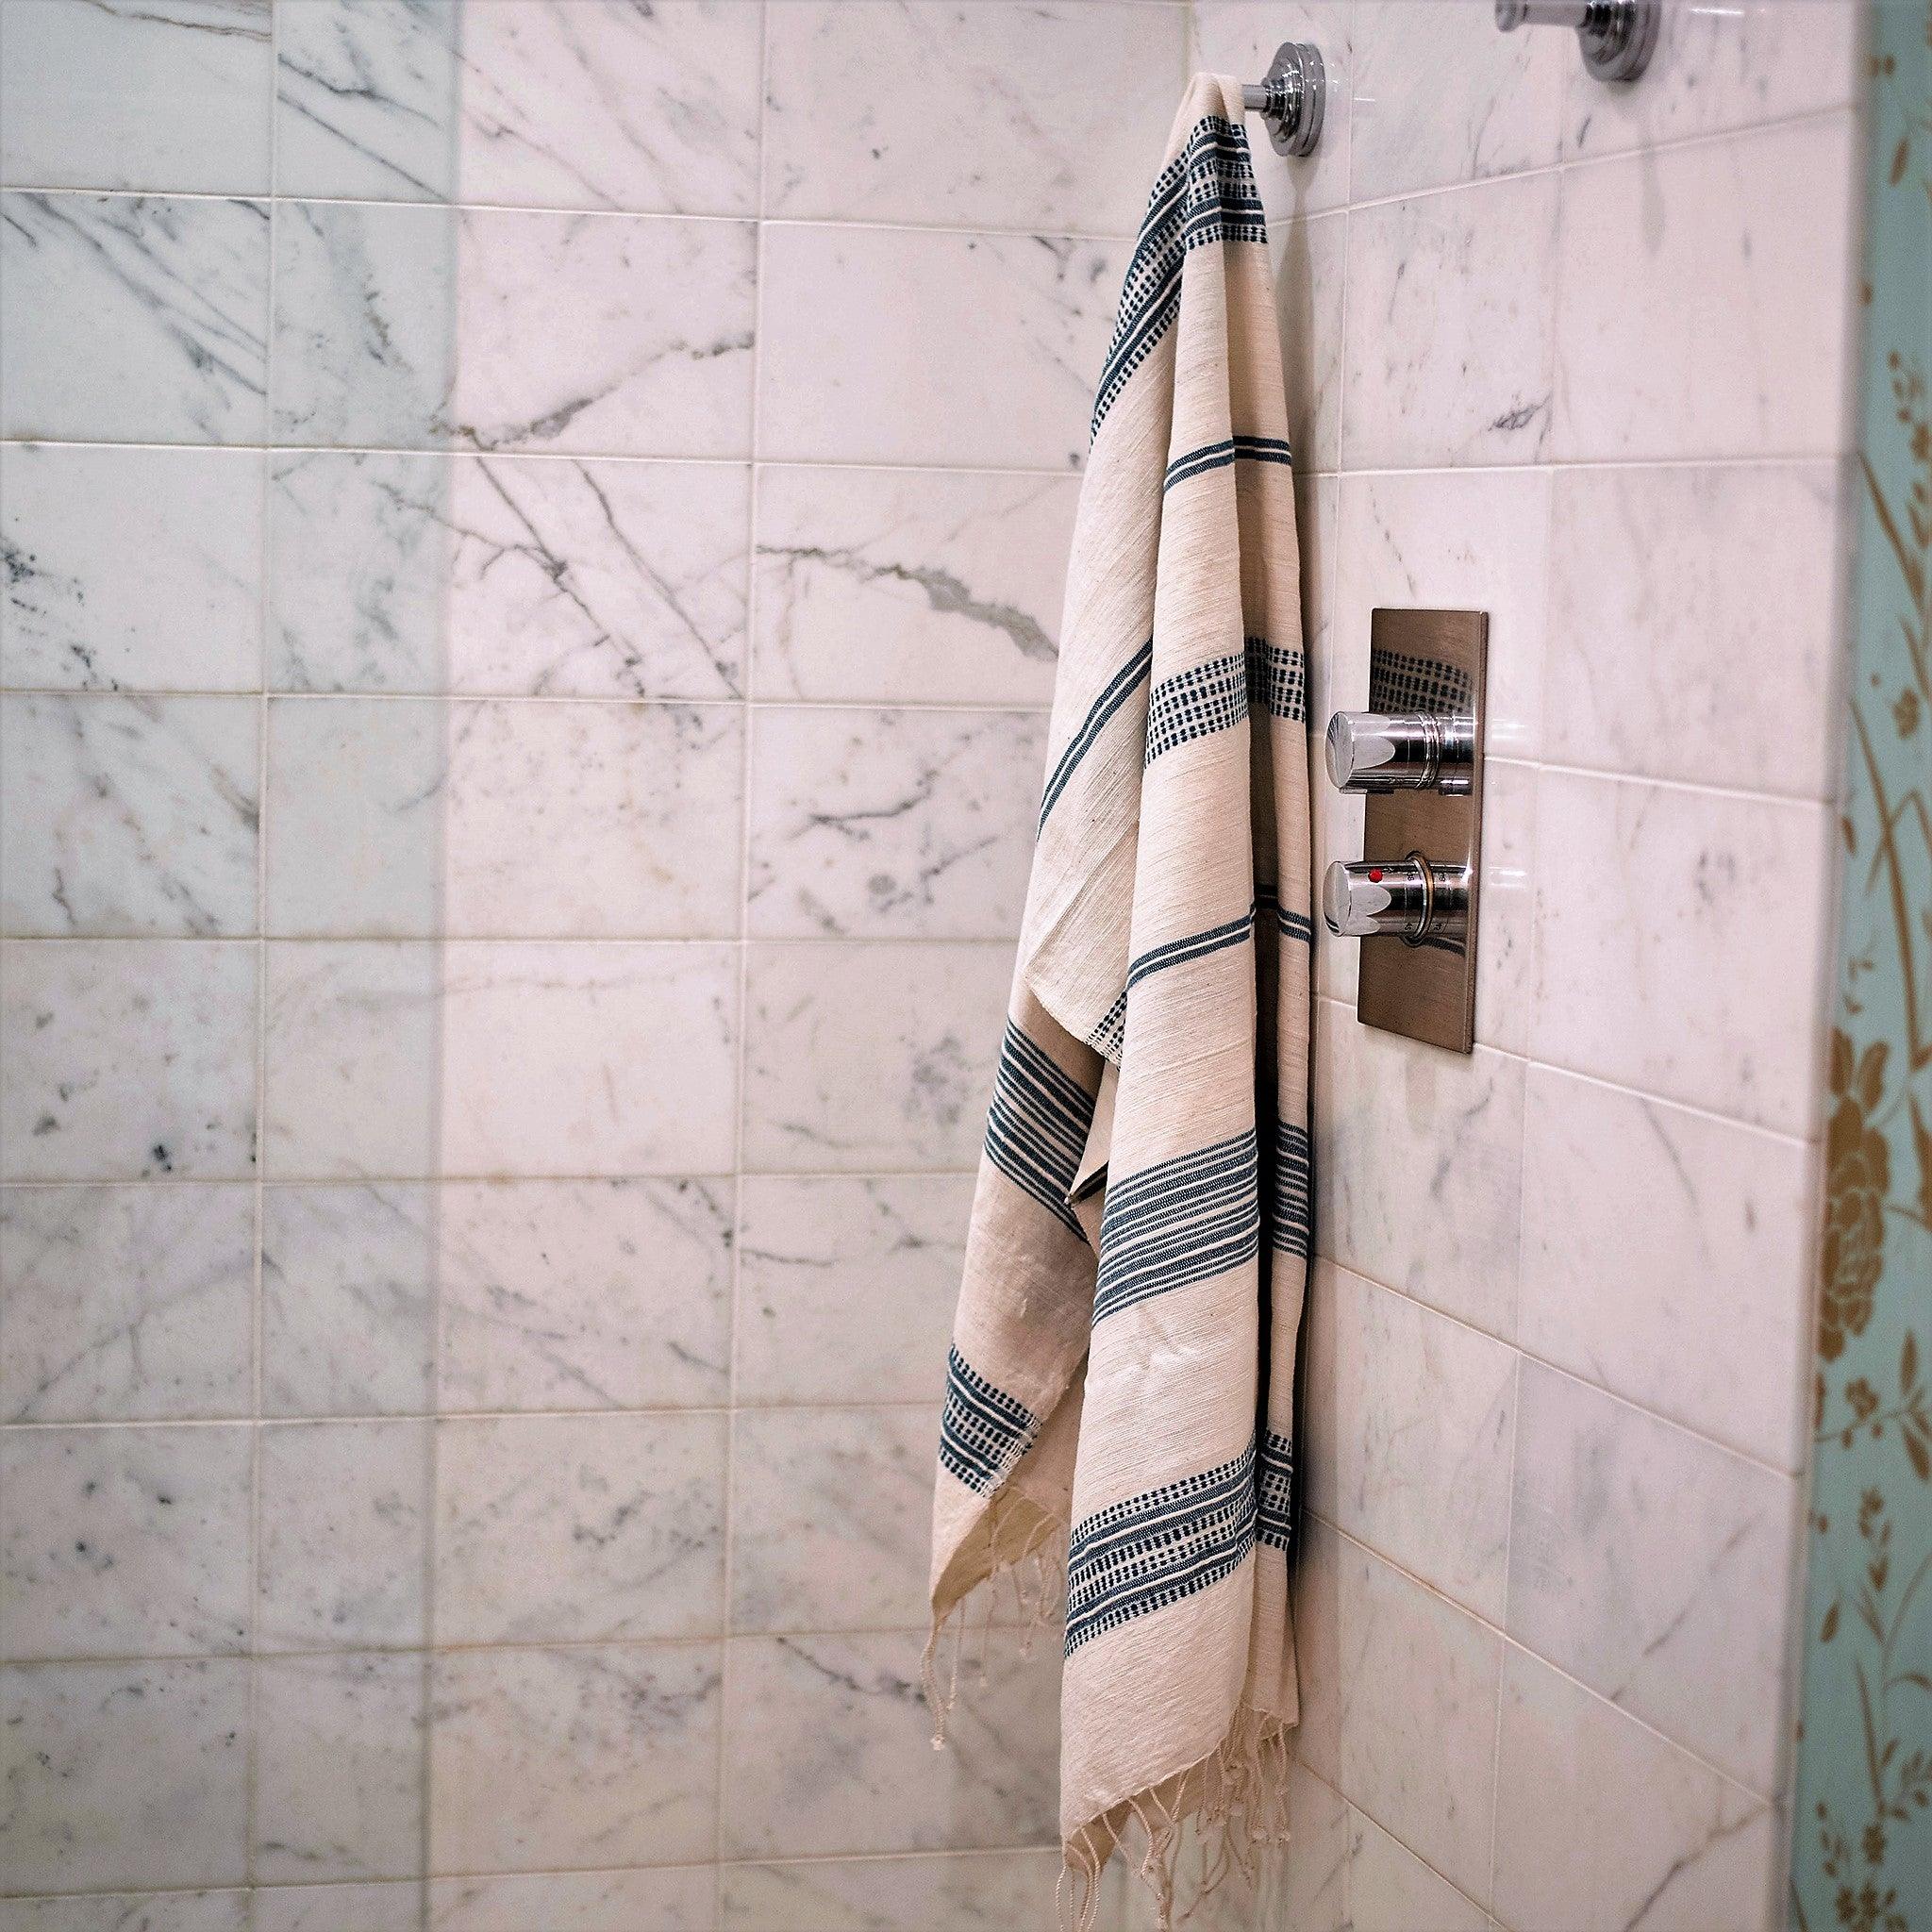 Guest Hand Towels Set 2, 20x32| Addis Gray Bathroom, 54kibo